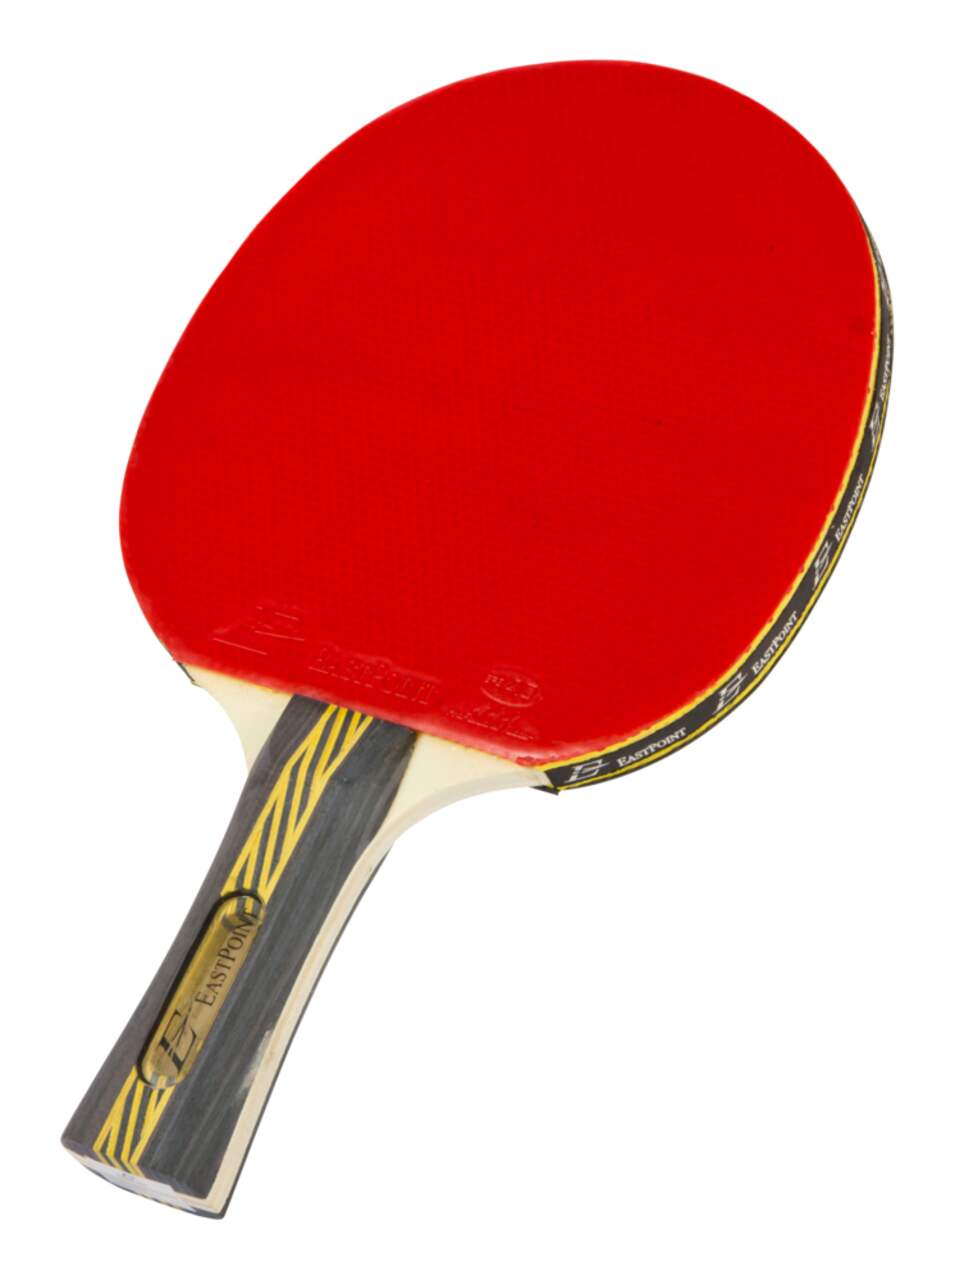 Acheter une raquette de ping-pong/raquette de tennis de table